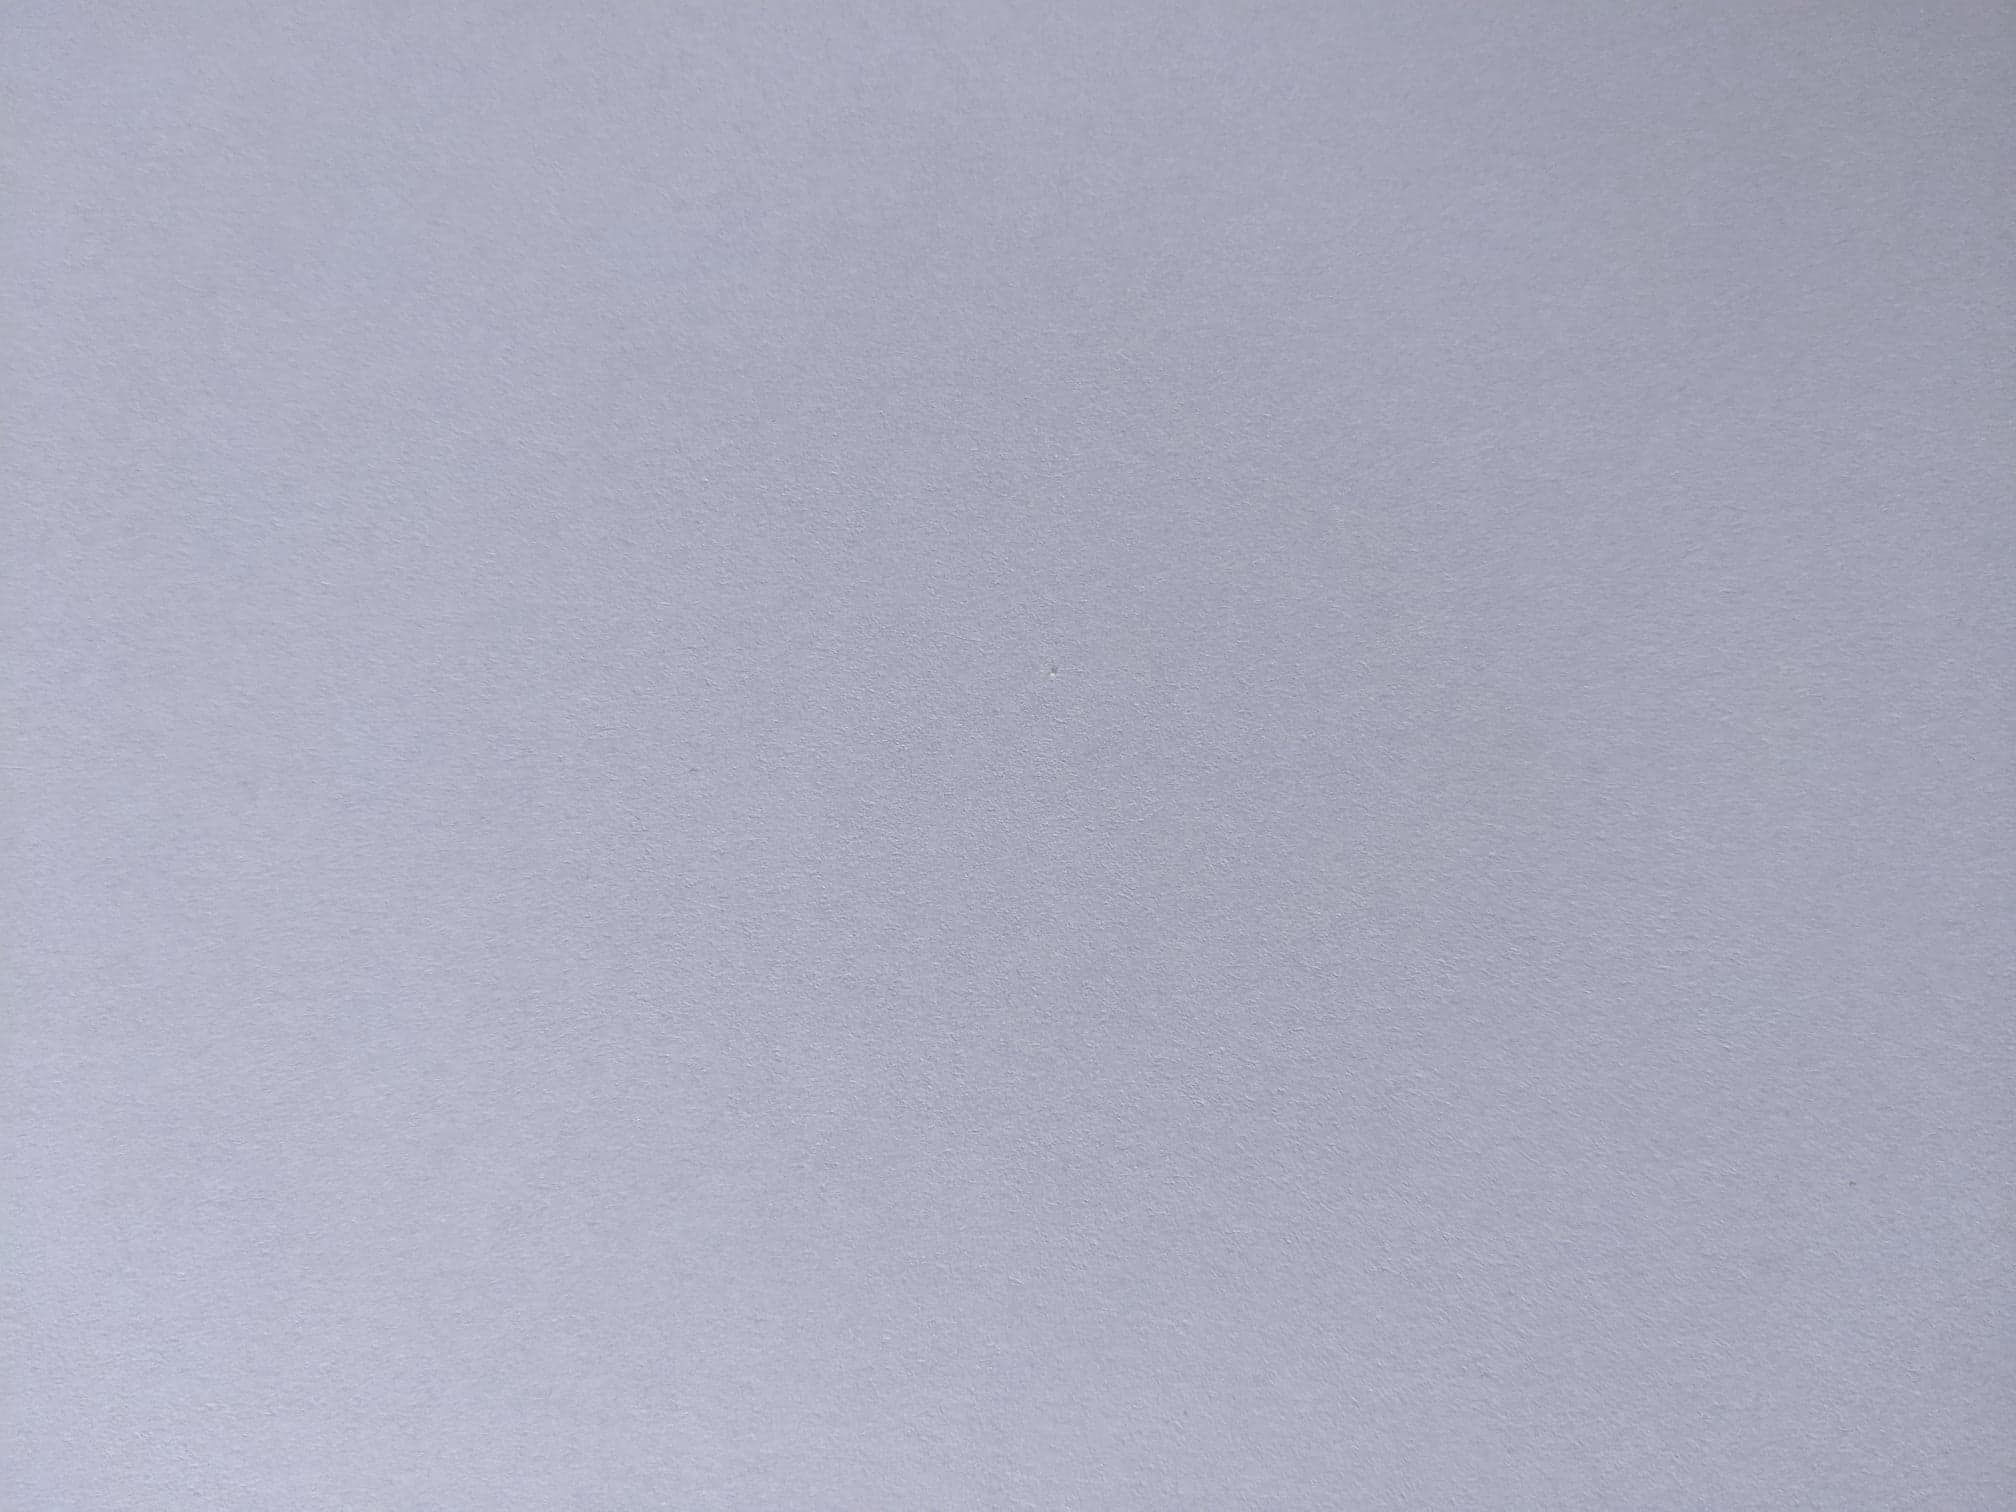 Lilac Matt paper 160 gsm, double sided paper/ lightweight card